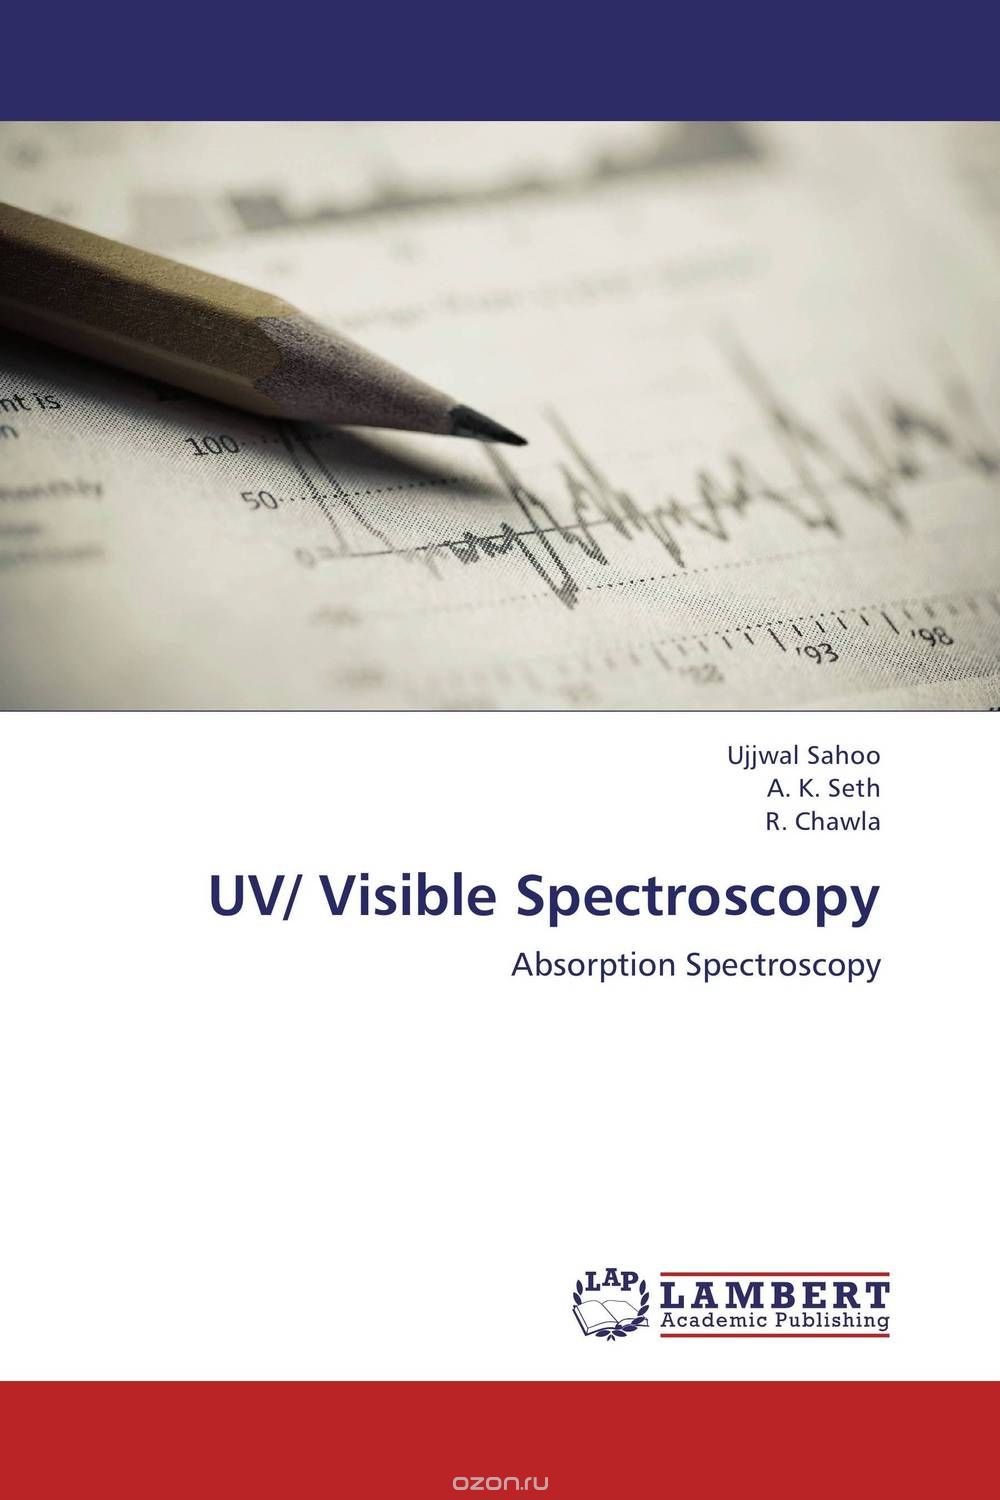 Скачать книгу "UV/ Visible Spectroscopy"